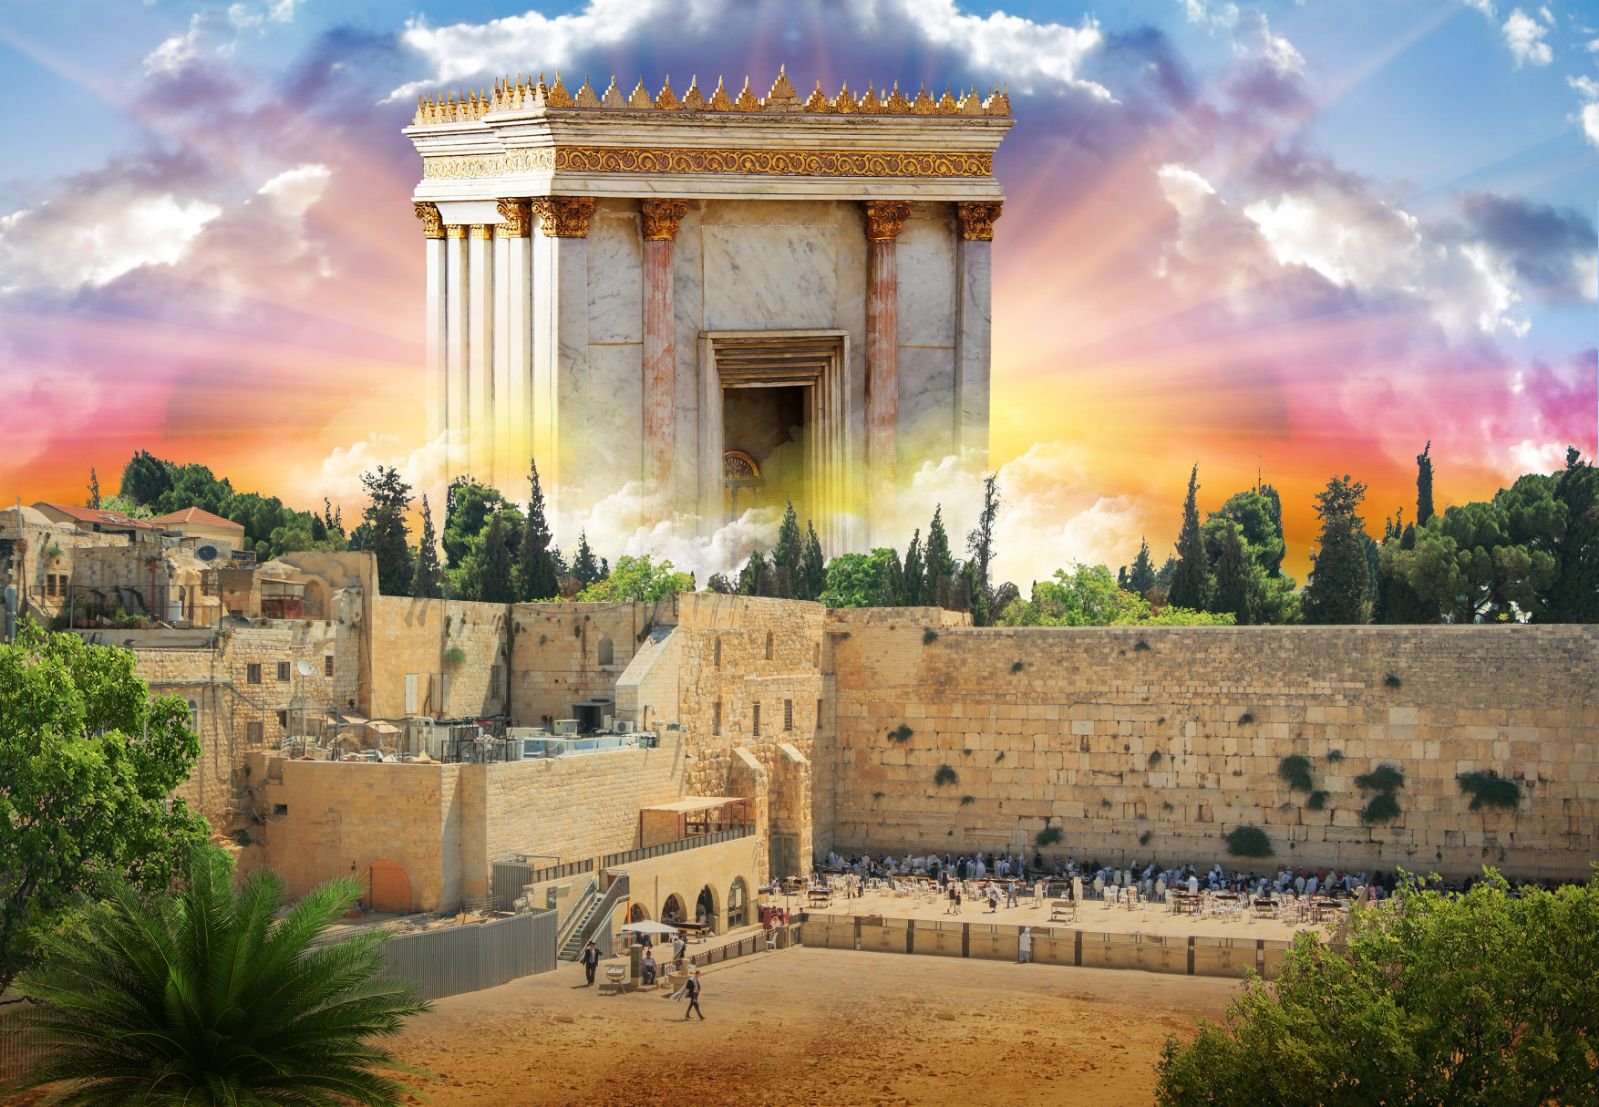 עם ישראל חי
שְׁמַע יִשְׂרָאֵל
🎩⚜🇮🇱✡︎🇦🇿⚜🎩